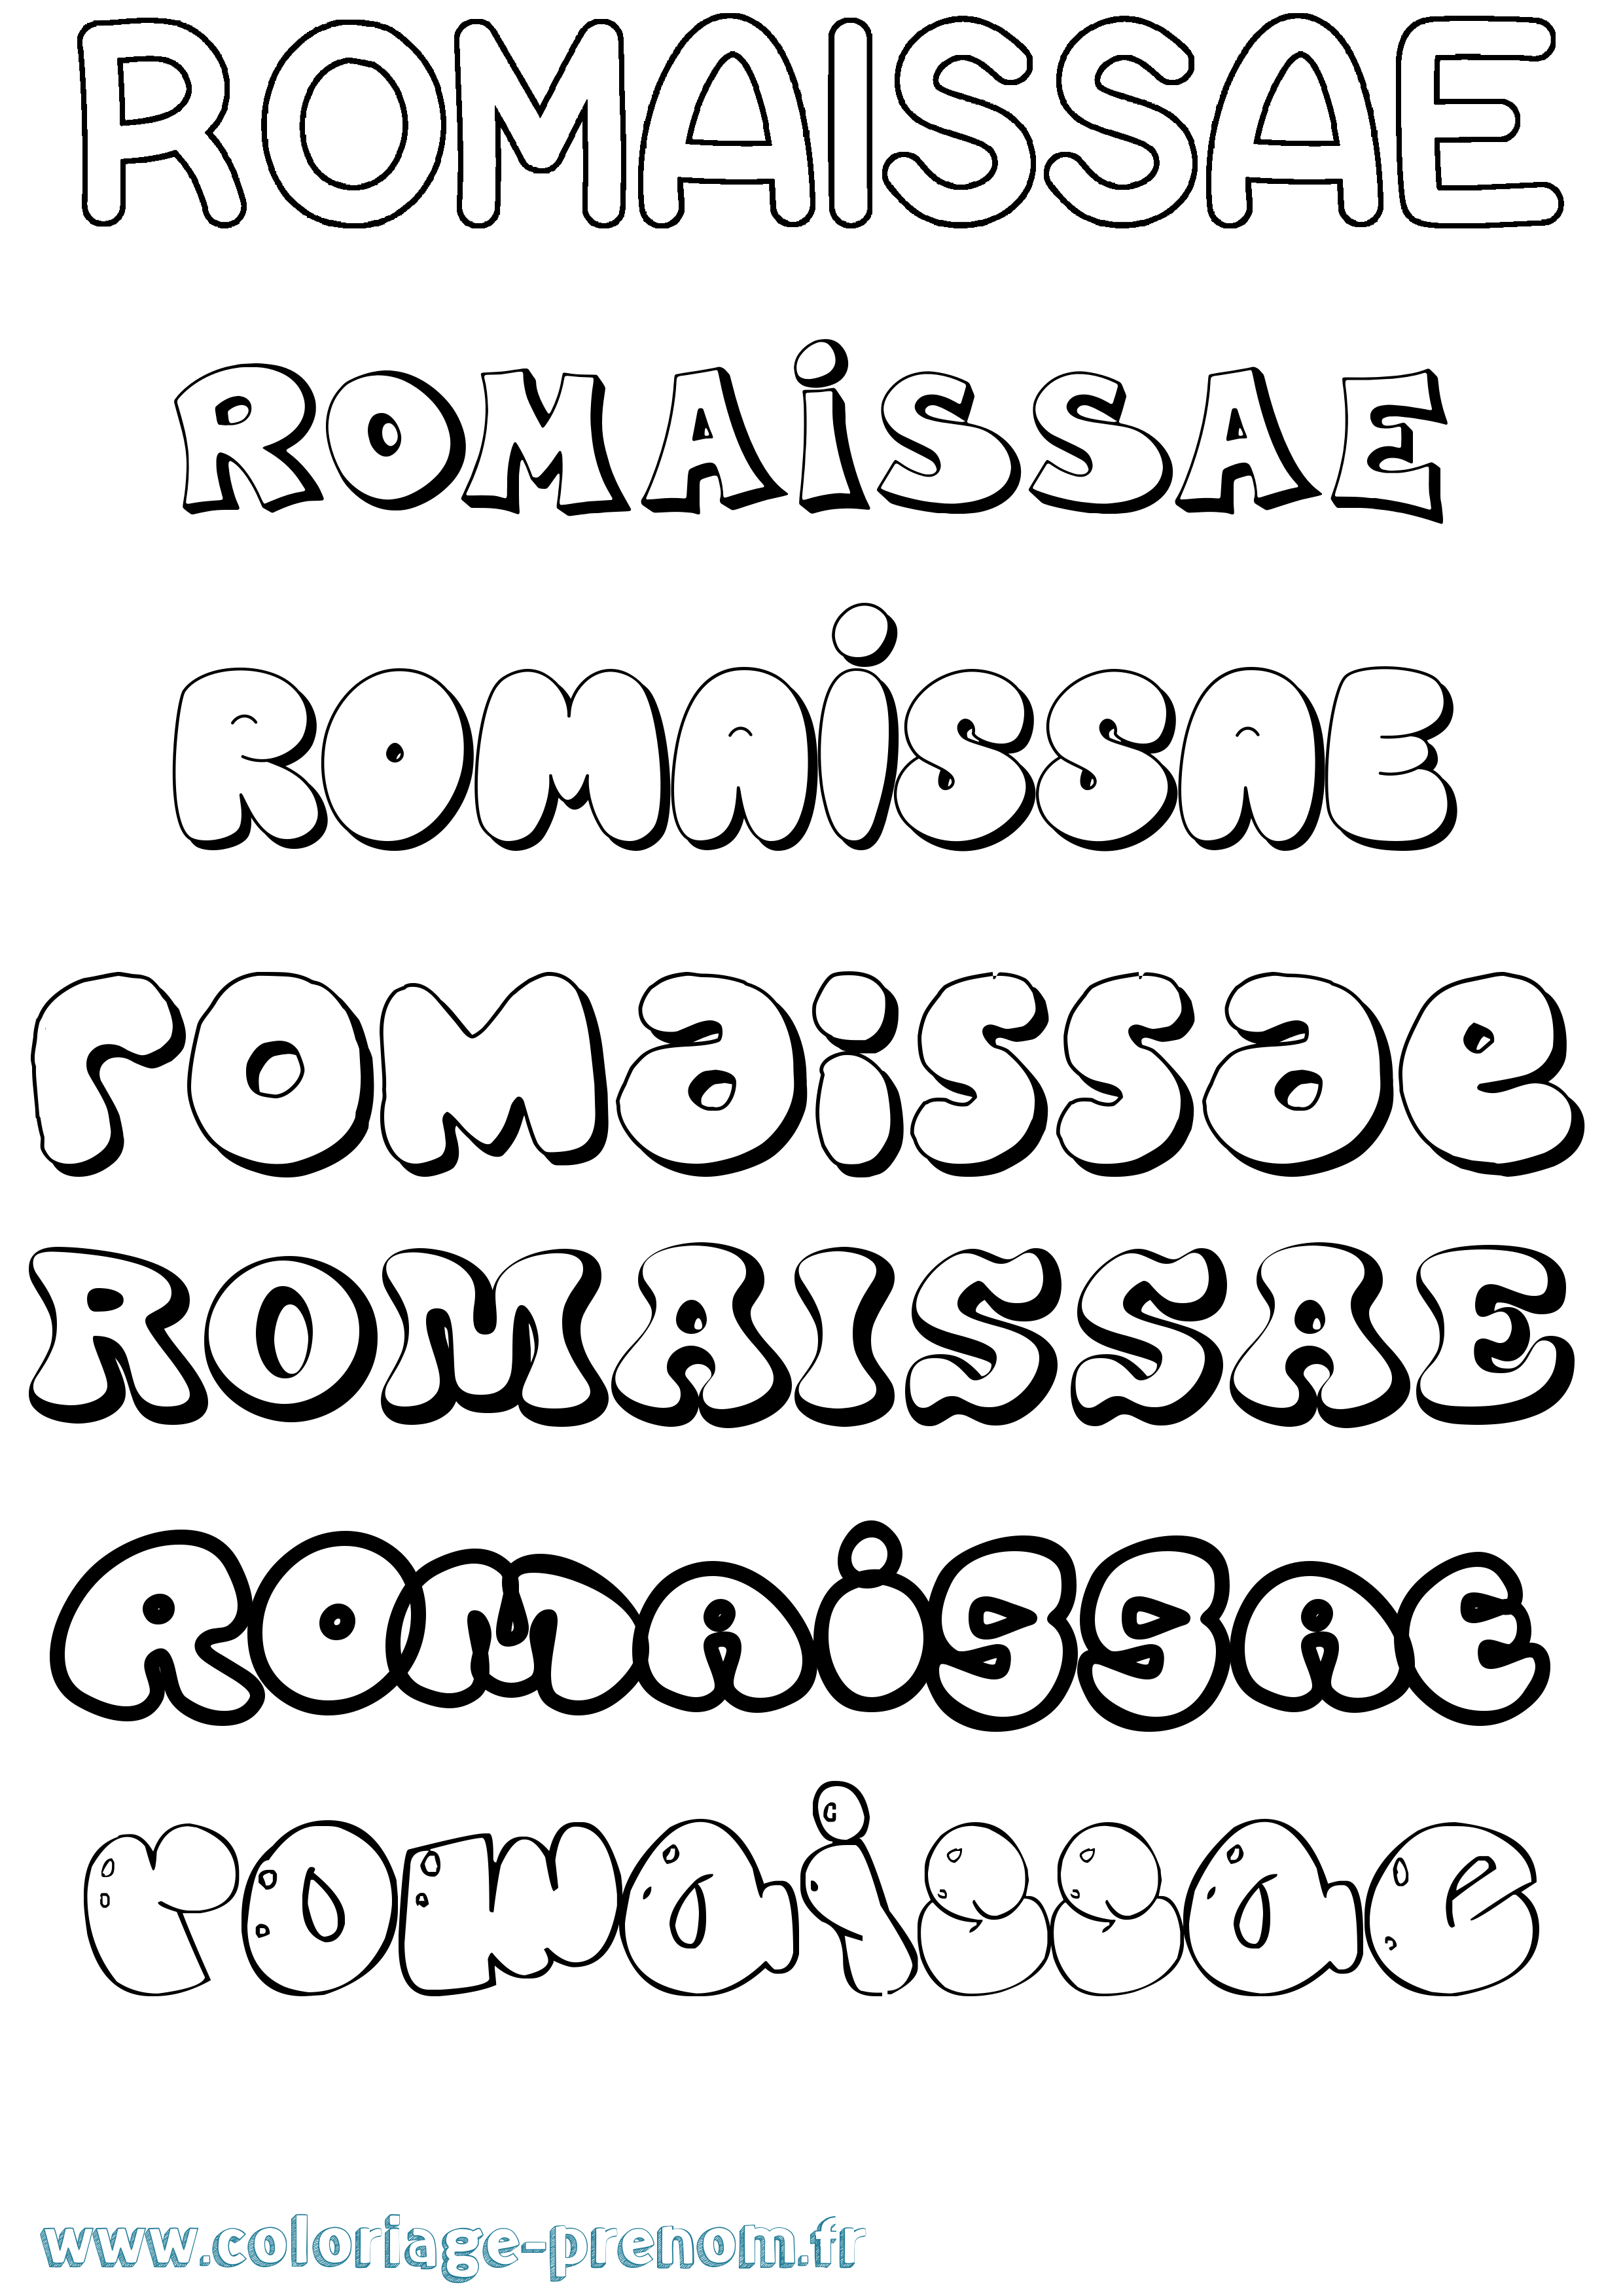 Coloriage prénom Romaissae Bubble